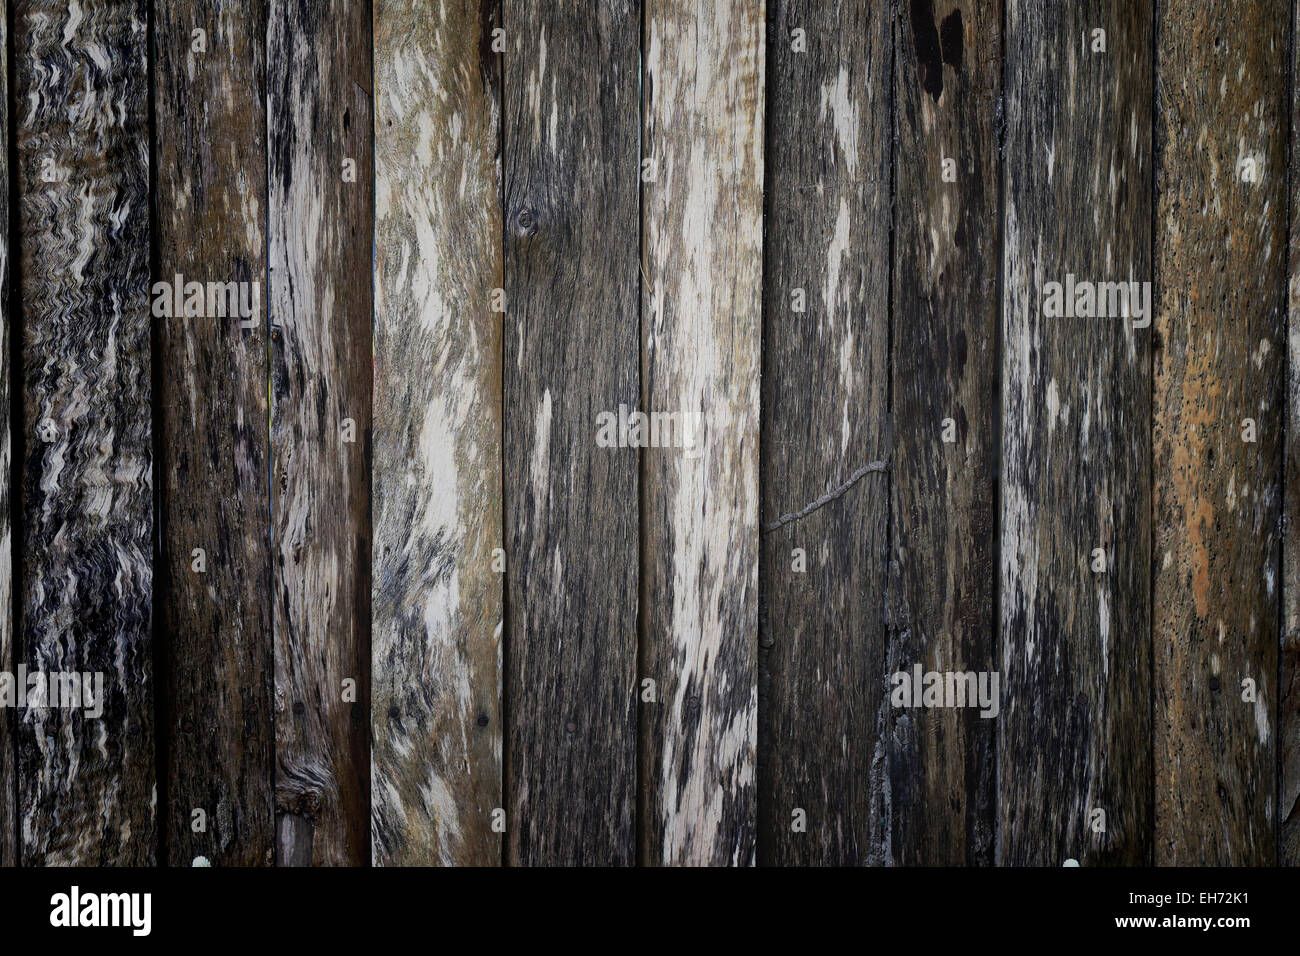 Viejas paredes de madera para la imagen de fondo. Foto de stock